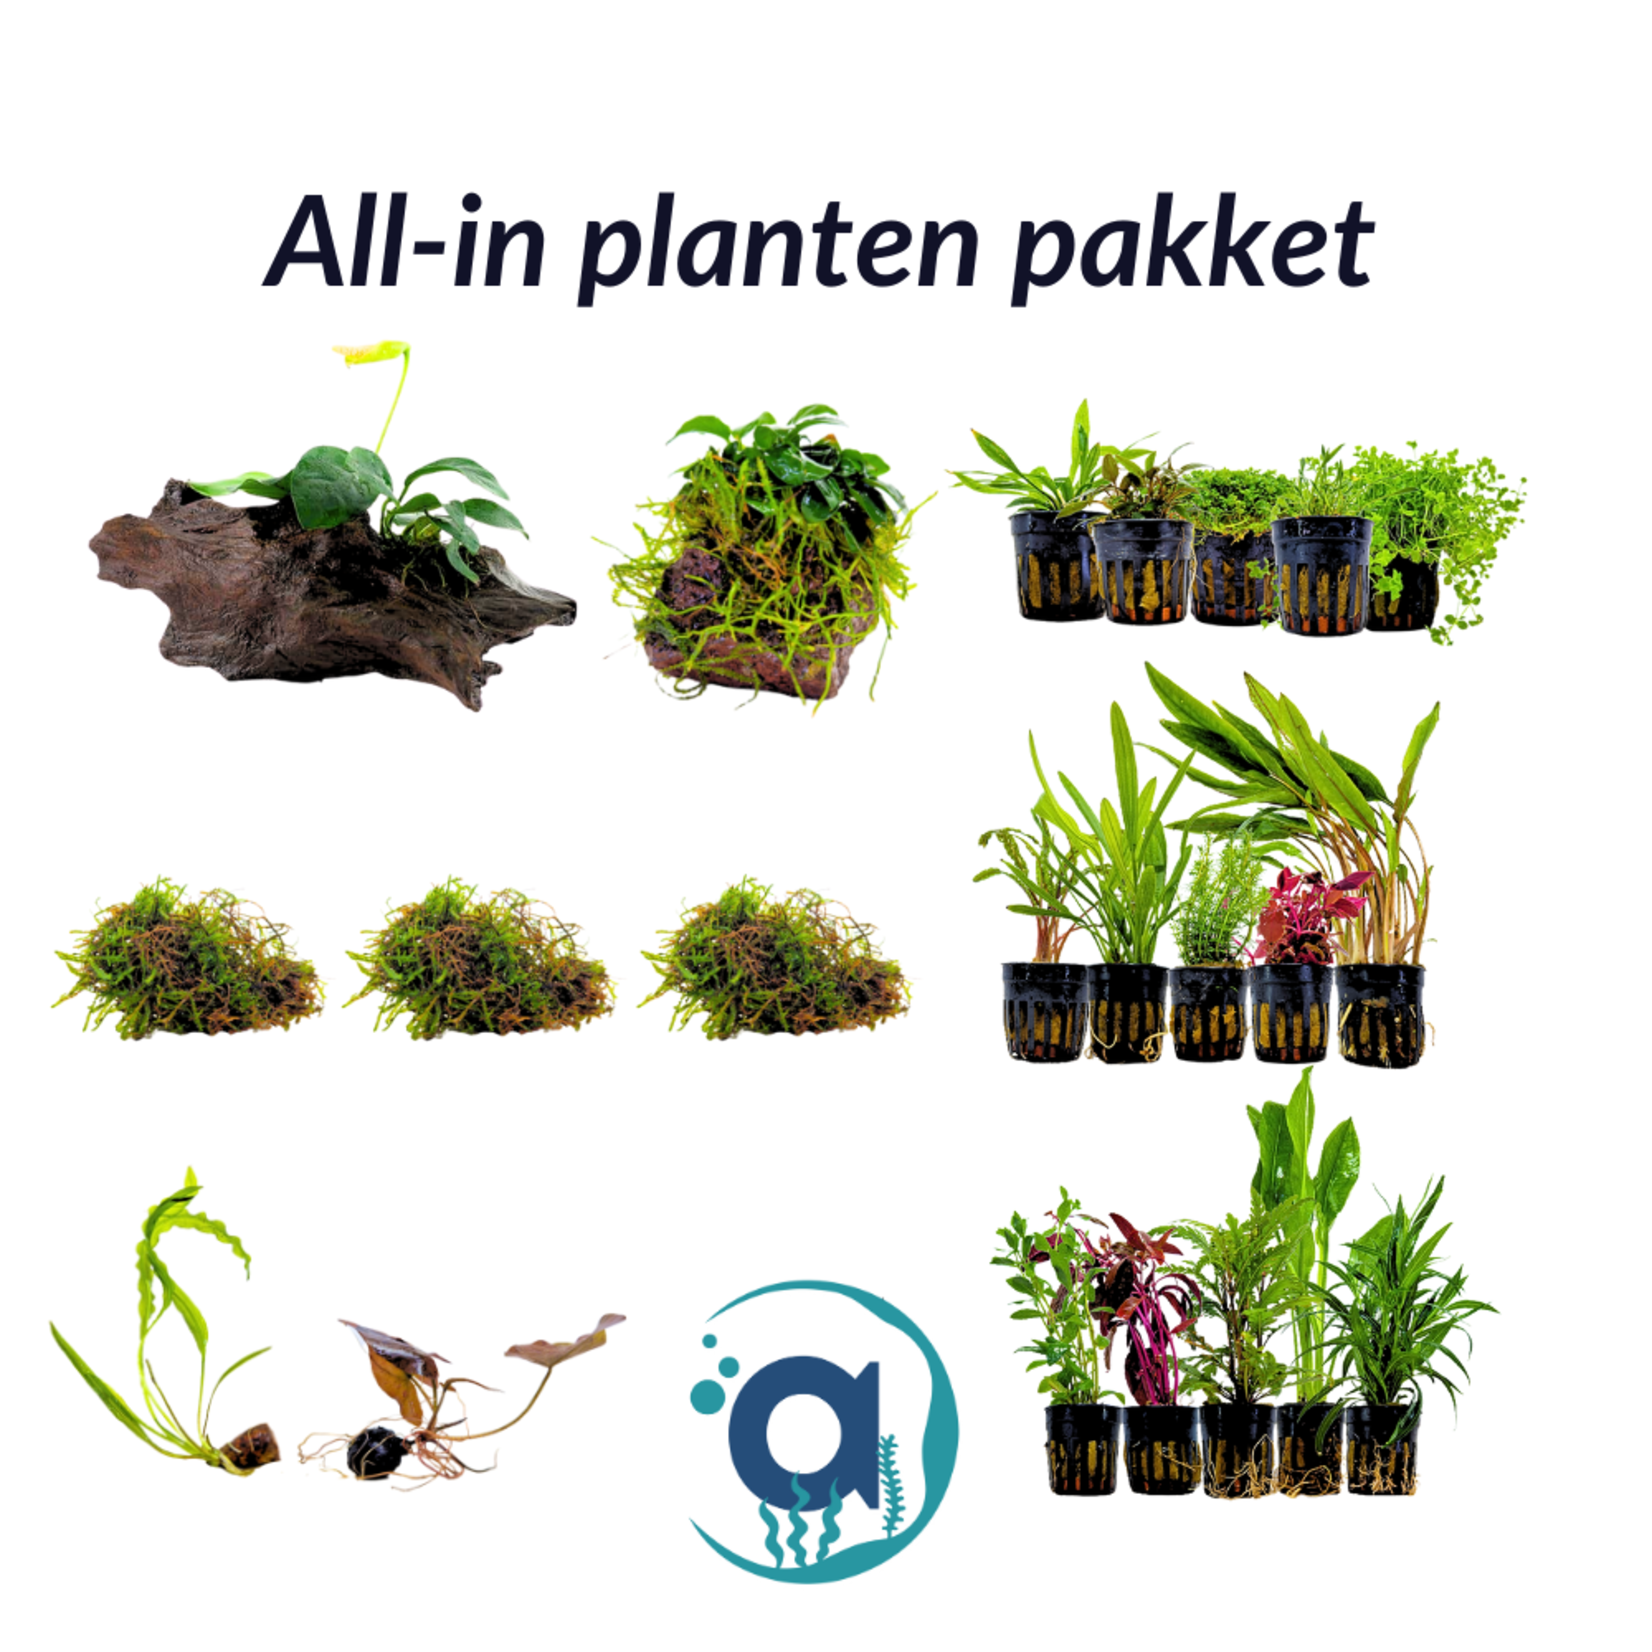 All-In planten pakket